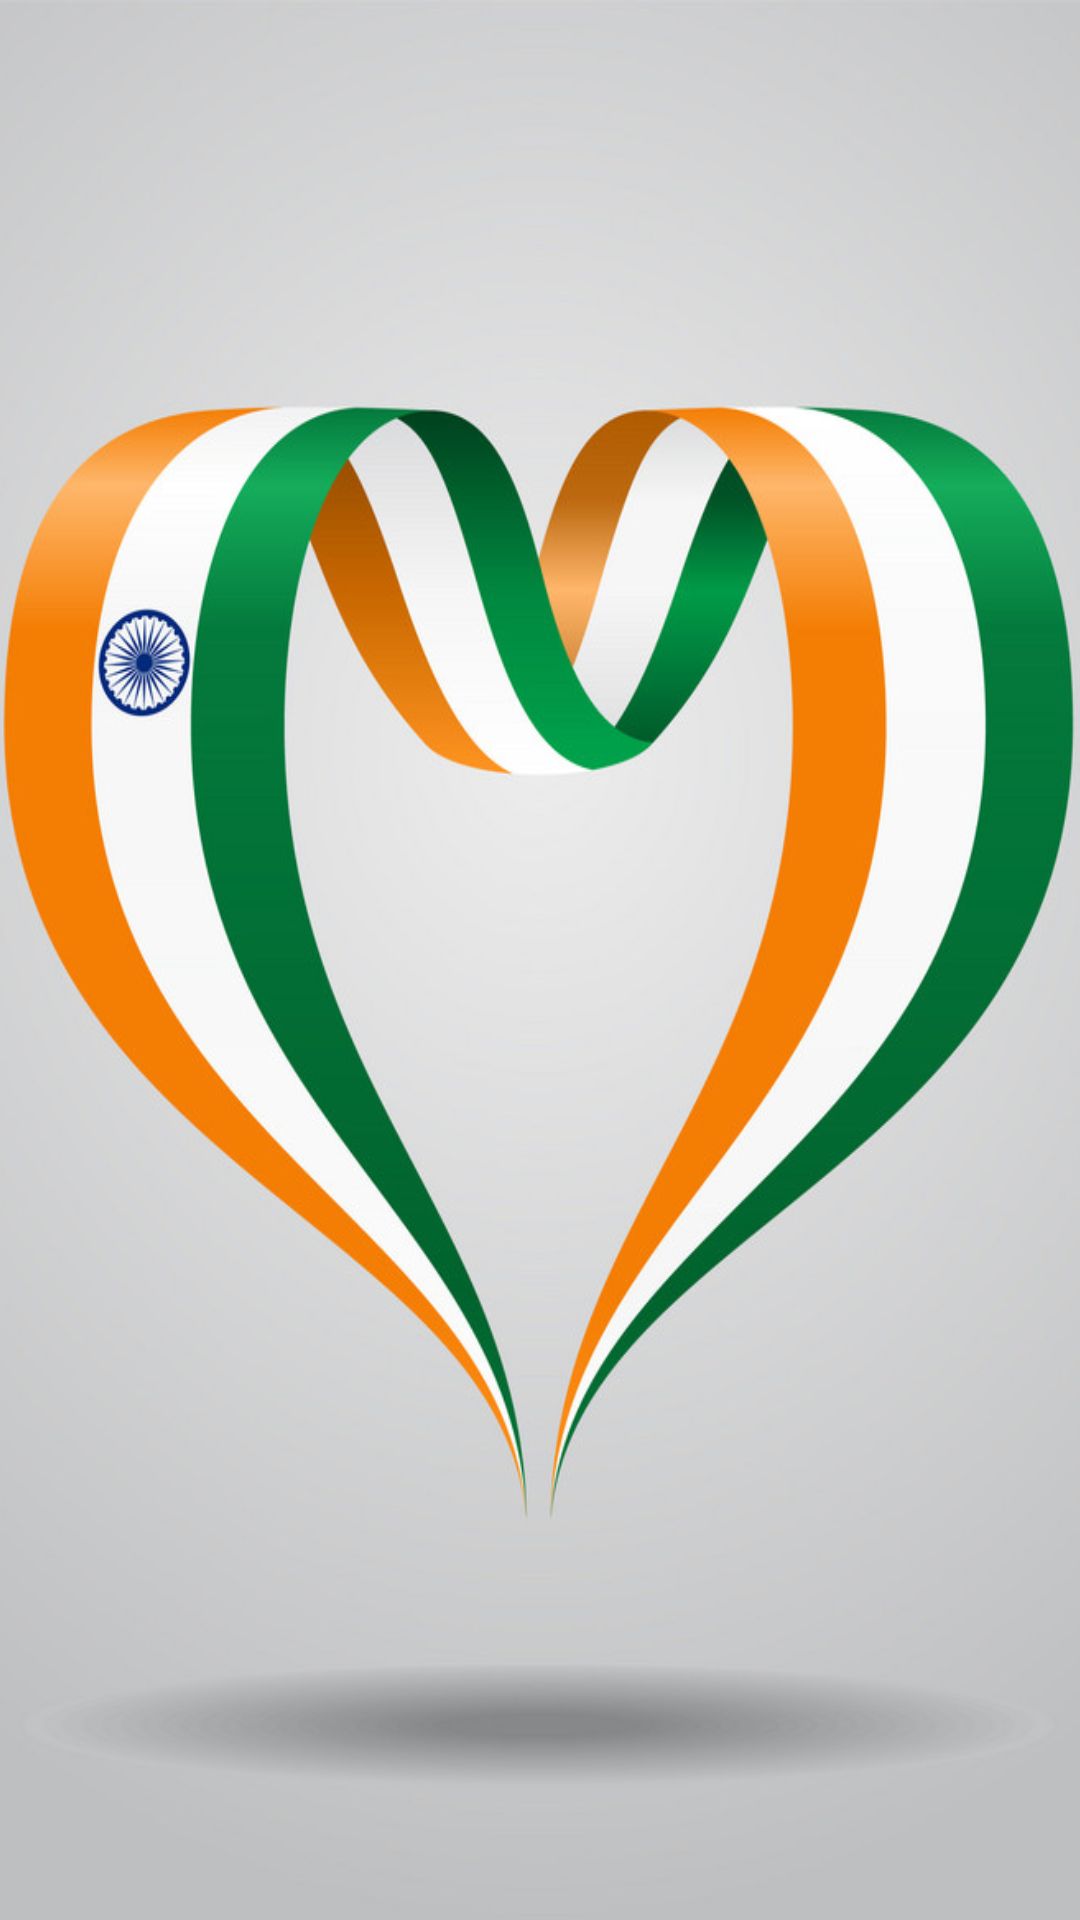 किस राज्य को कहा जाता है भारत का दिल? 